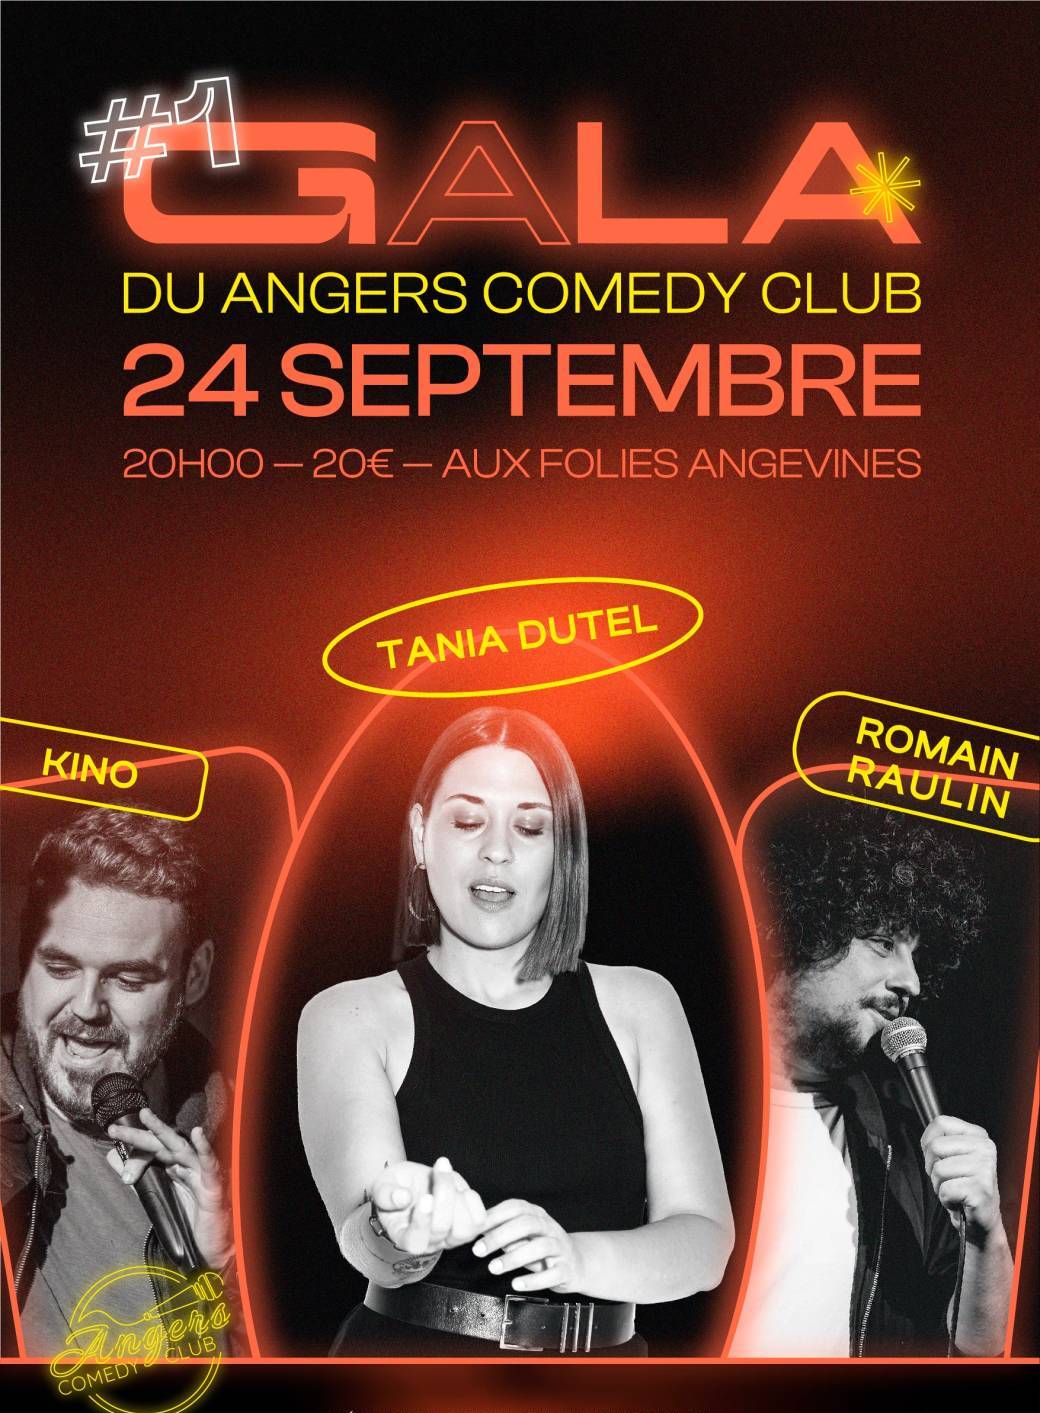 Gala du Angers Comedy Club - 24 Septembre 2022